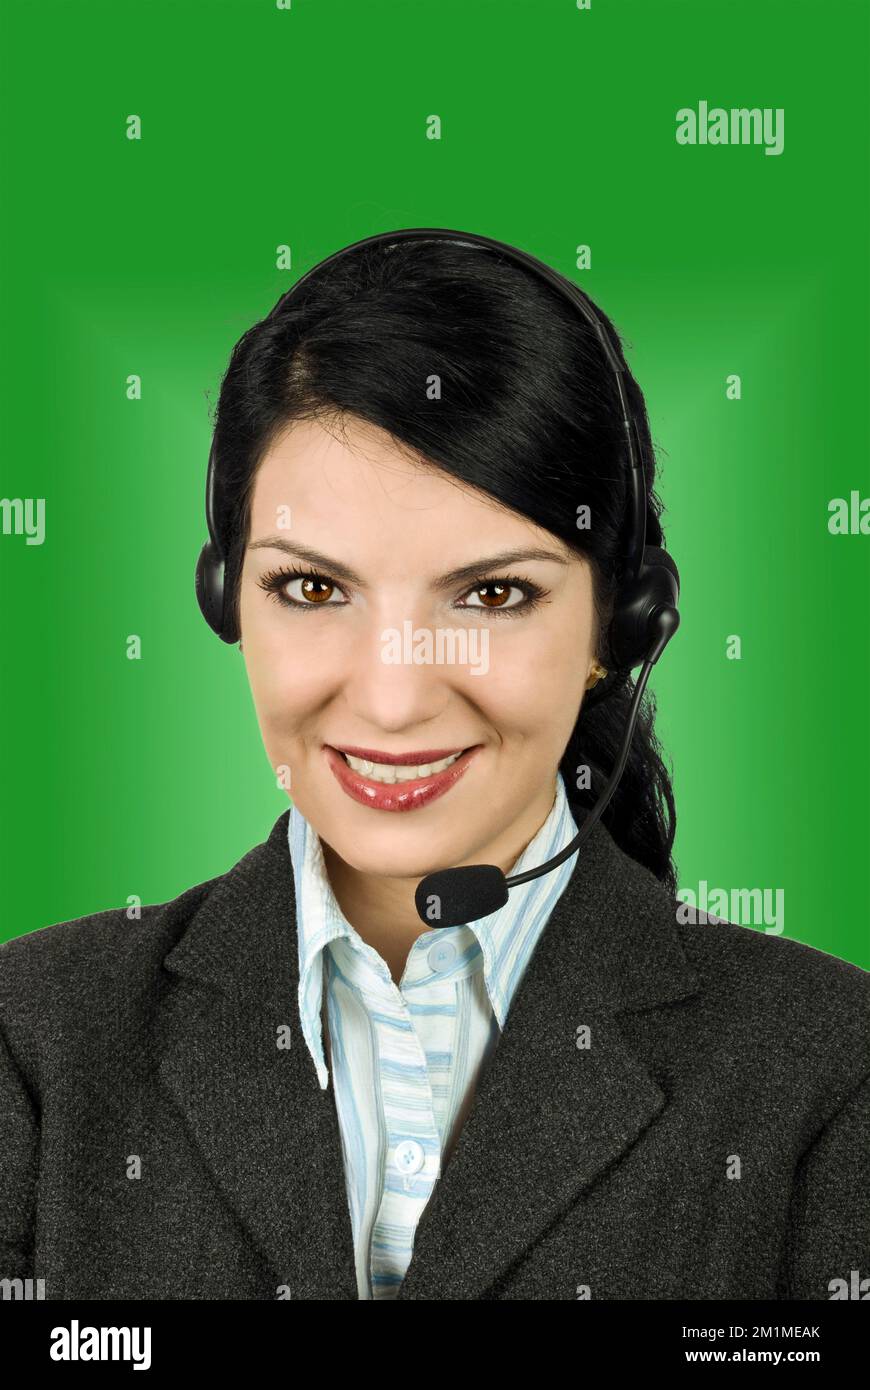 Beau Portrait de femme de l'opérateur de soutien ou d'assistance à répondre à vos questions Banque D'Images